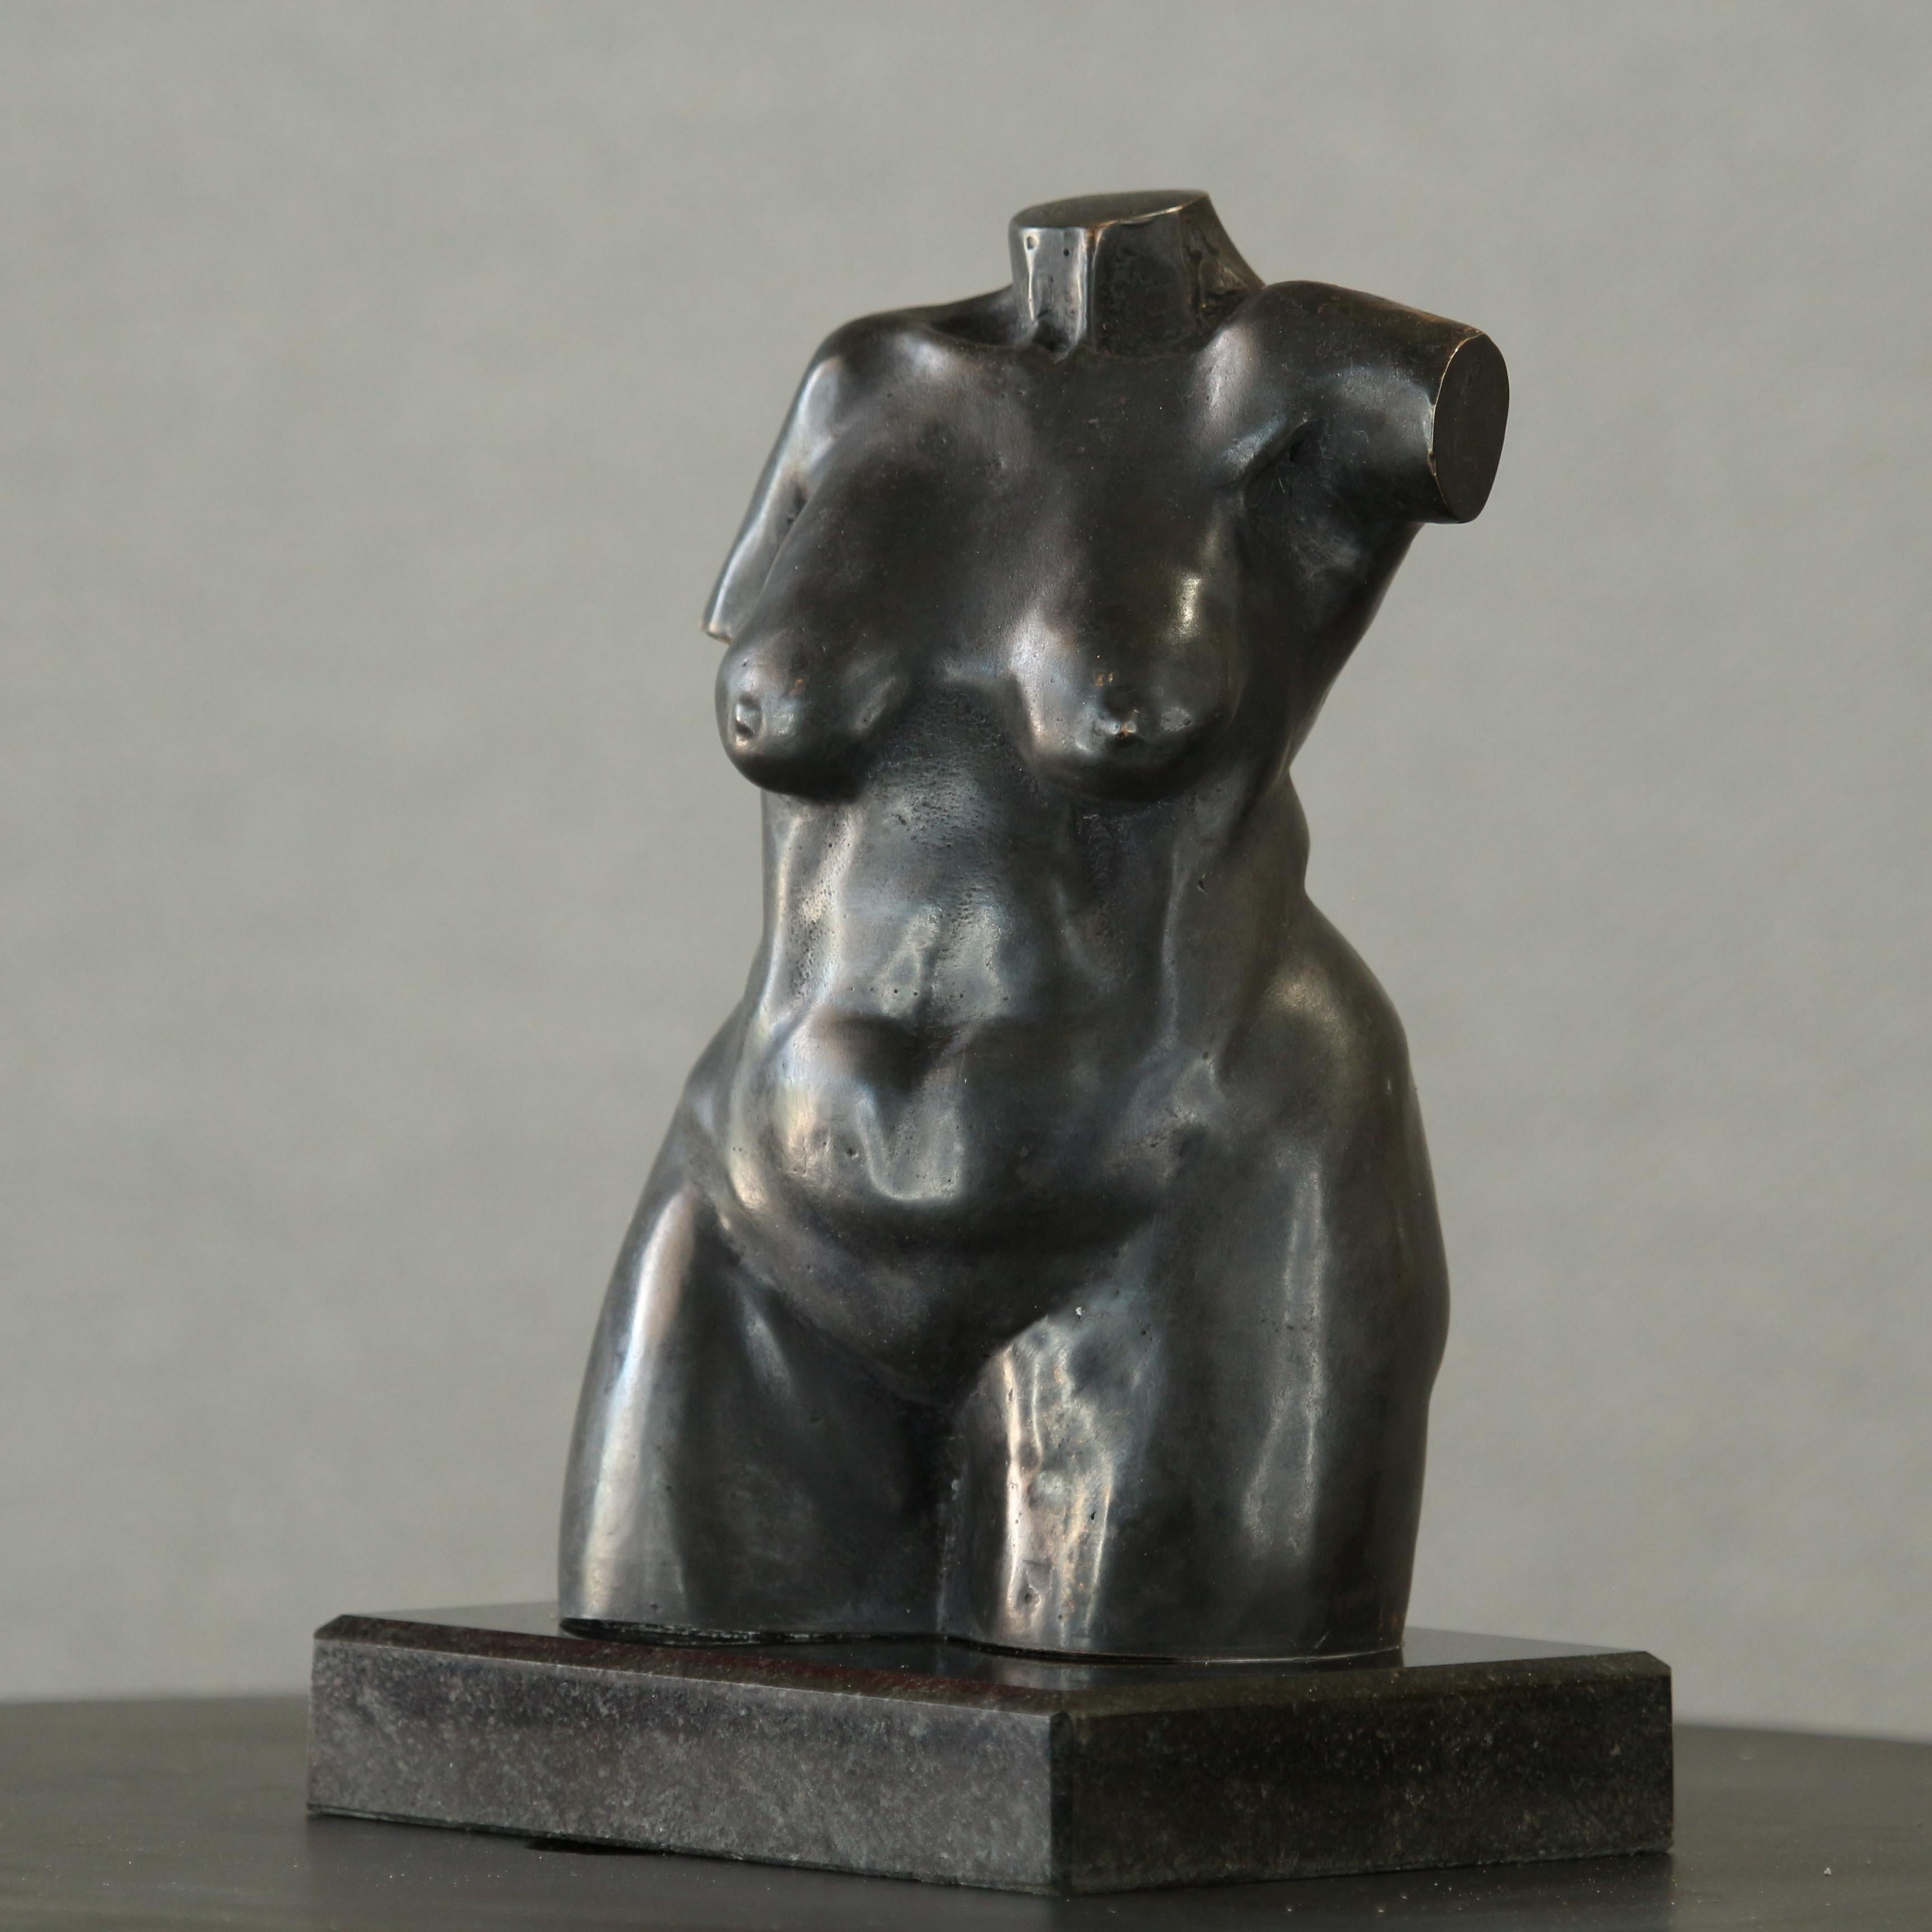 Torse de femme féminine - Petite sculpture figurative de femme en bronze patiné brun foncé - Sculpture de Willem Botha 